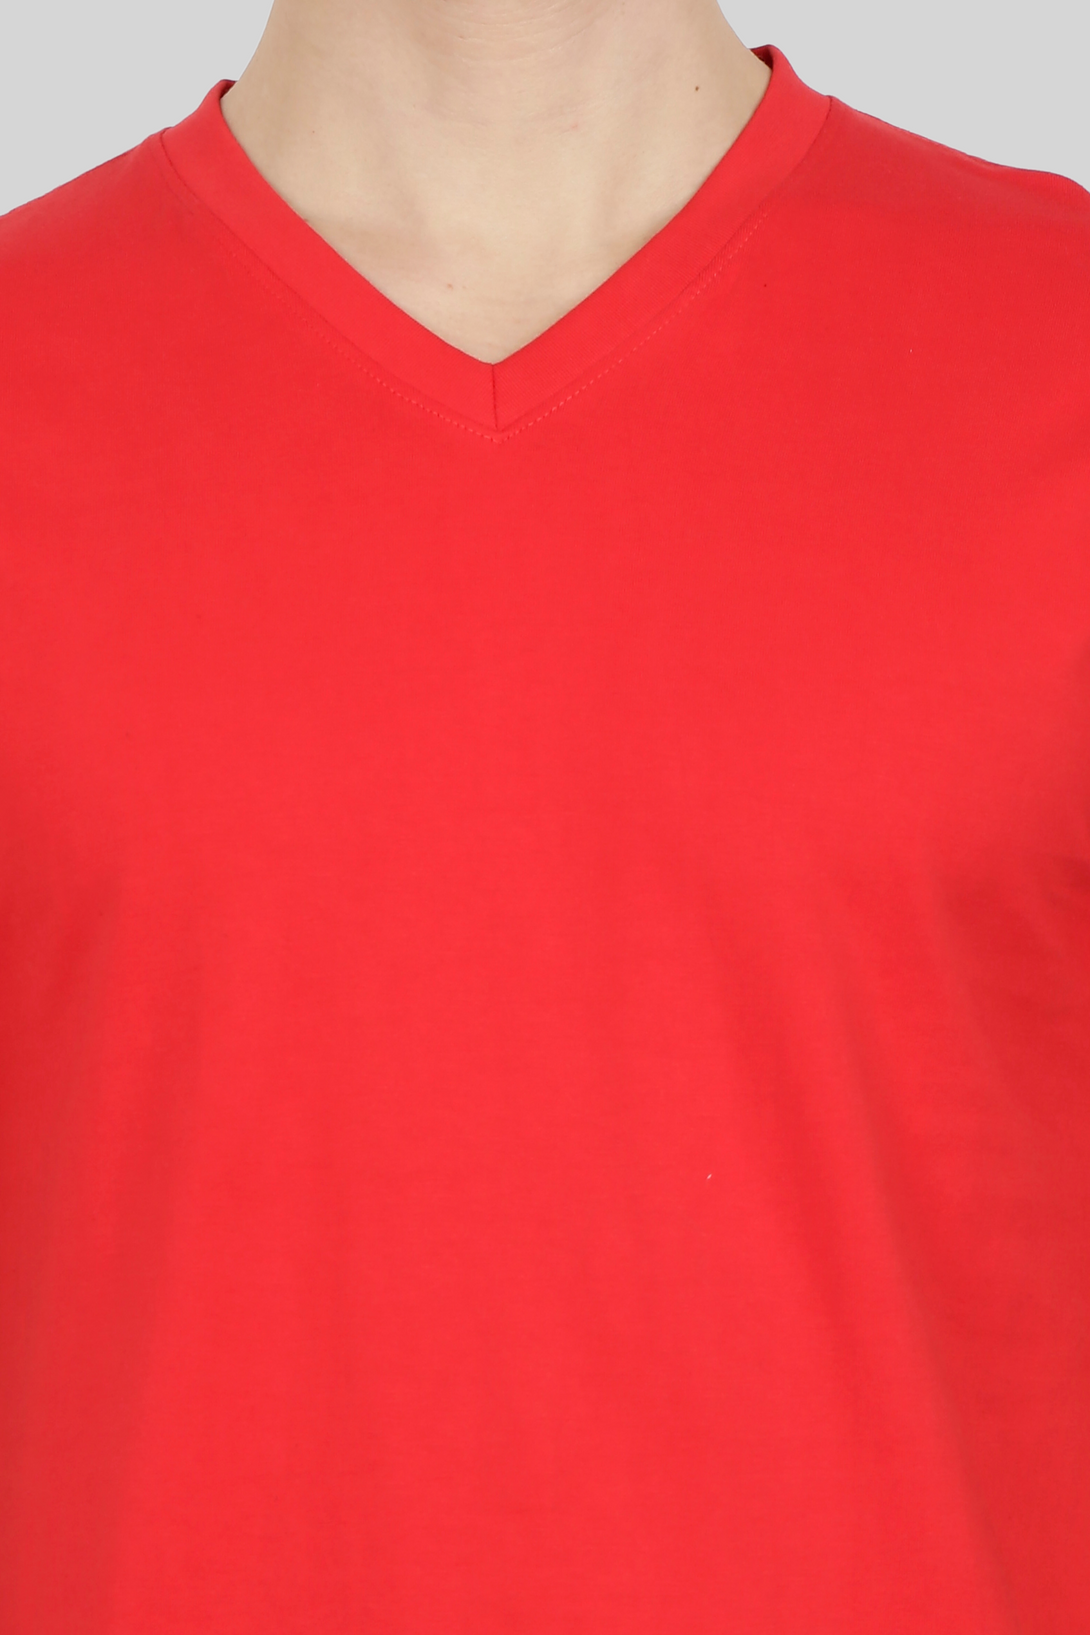 Red V Neck T-Shirt For Men - WowWaves - 7